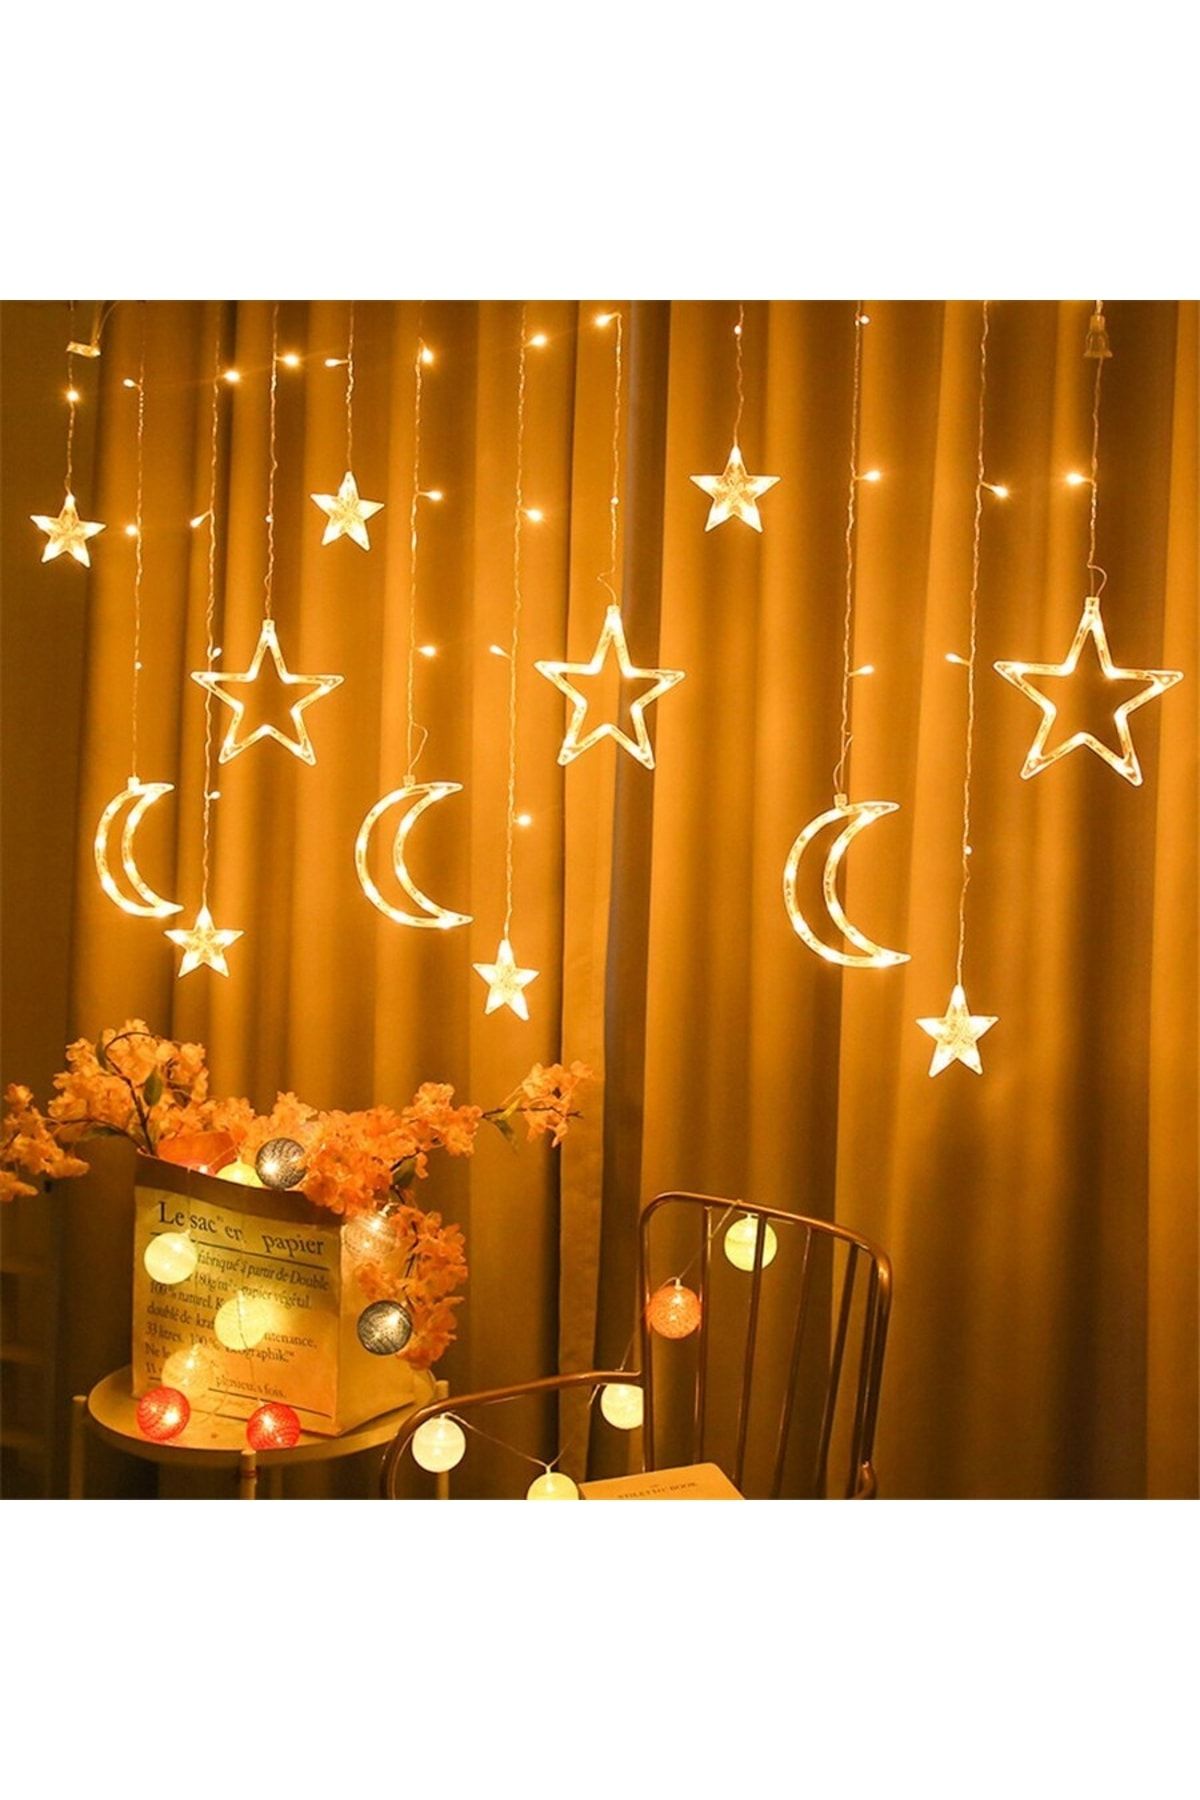 Huzur Party Store Ay Hilal Yıldız Perde Led Günışığı Ramazan Bayramı 3 Metre Sarı Işıklı Fişli 12 Saçaklı 8 Modlu